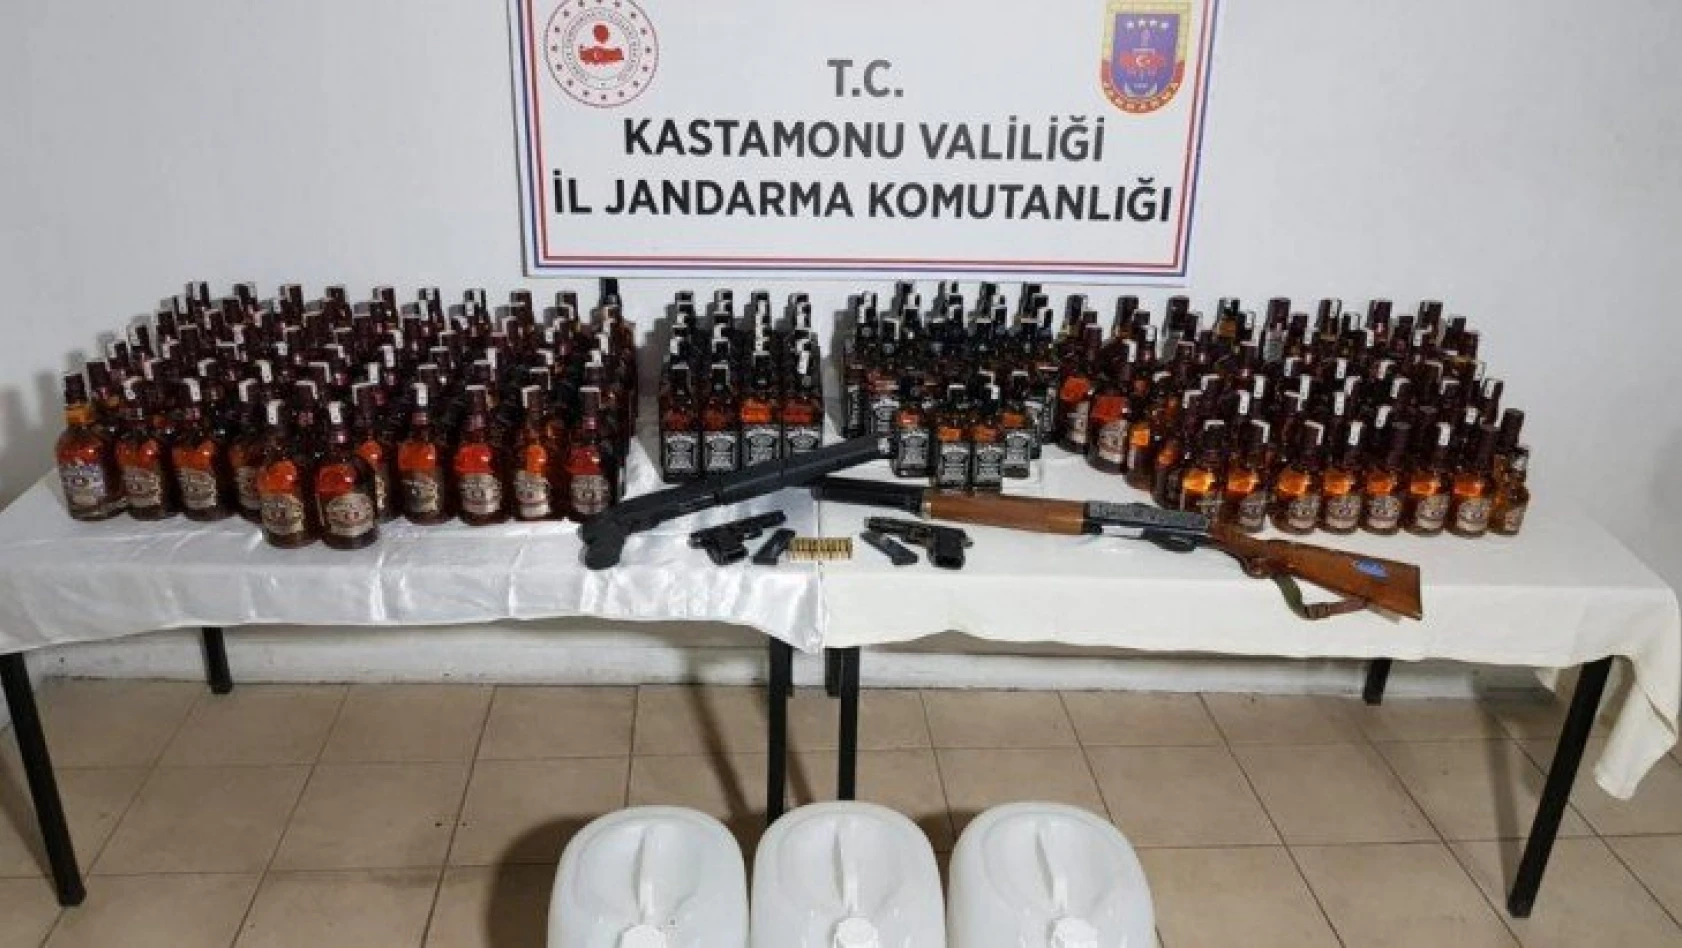 Kastamonu'daki kaçak içki operasyonunda 2 gözaltı